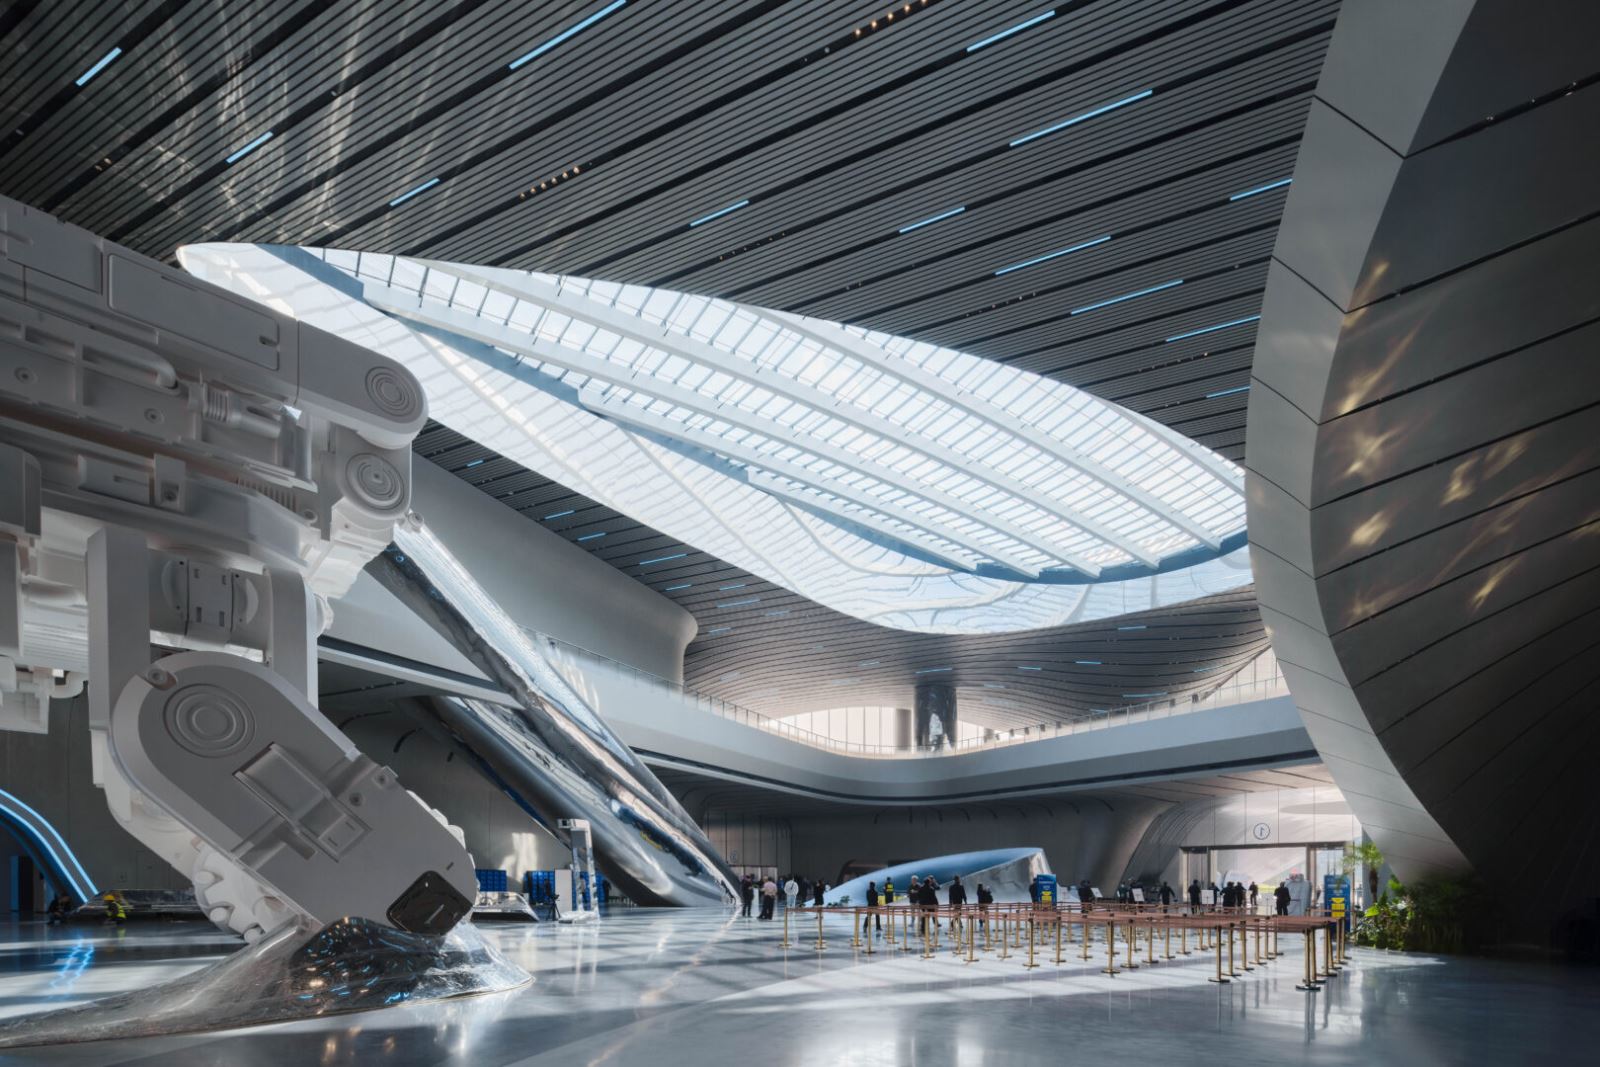 Lạc vào thế giới khoa học viễn tưởng bên trong bảo tàng nổi khổng lồ ở Trung Quốc